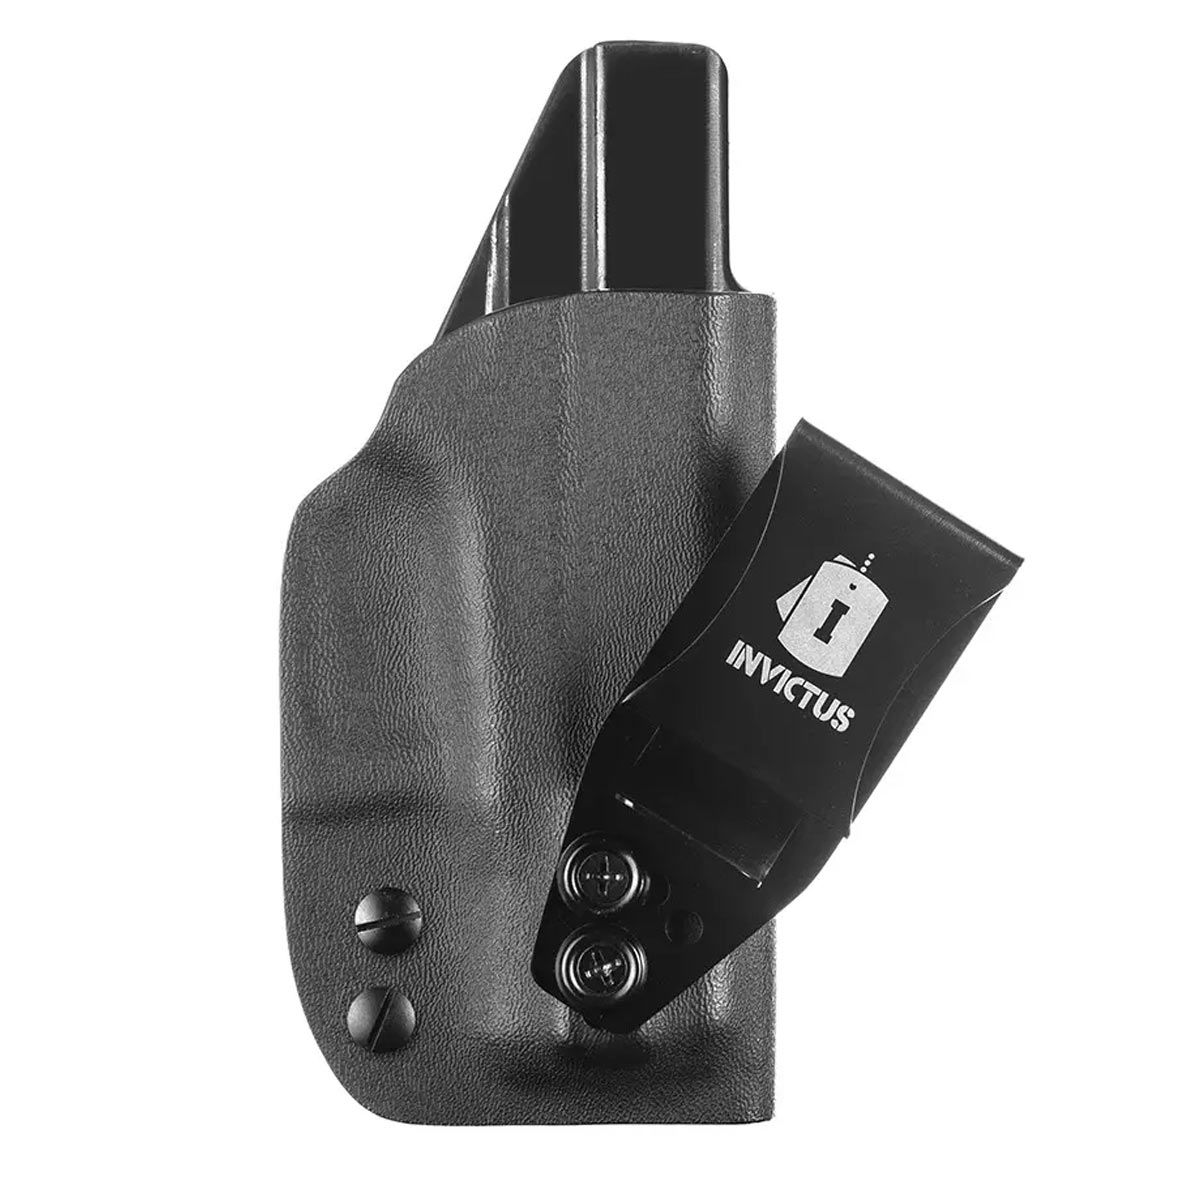 Coldre Tático KYDEX IWB Destro Subcompact Glock Compact Invictus